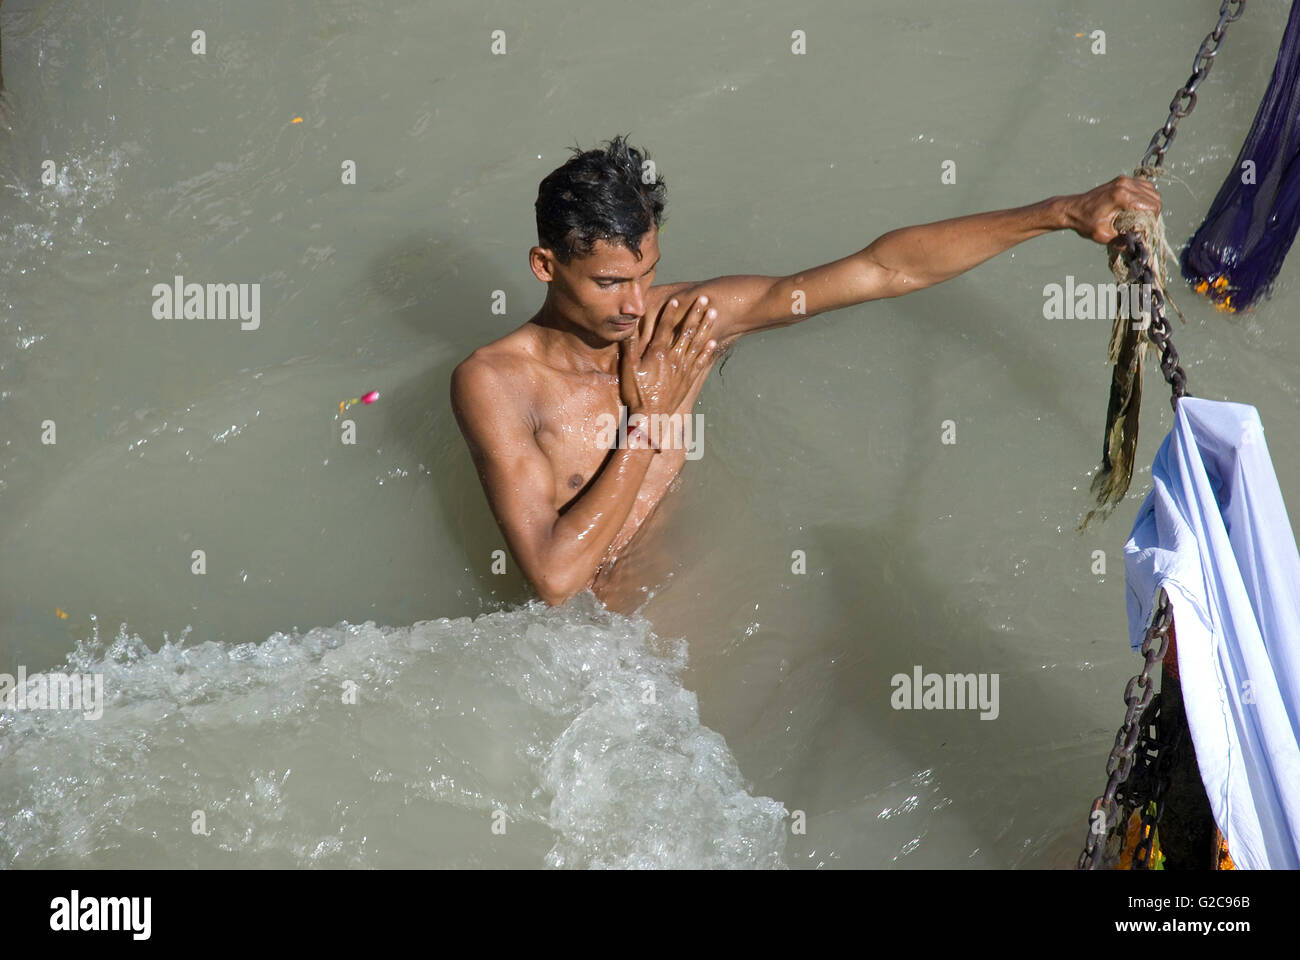 Hindu pilgrim taking a holy bath in the Ganges river, Har ki Paudi, Haridwar, Uttarakhand, India Stock Photo